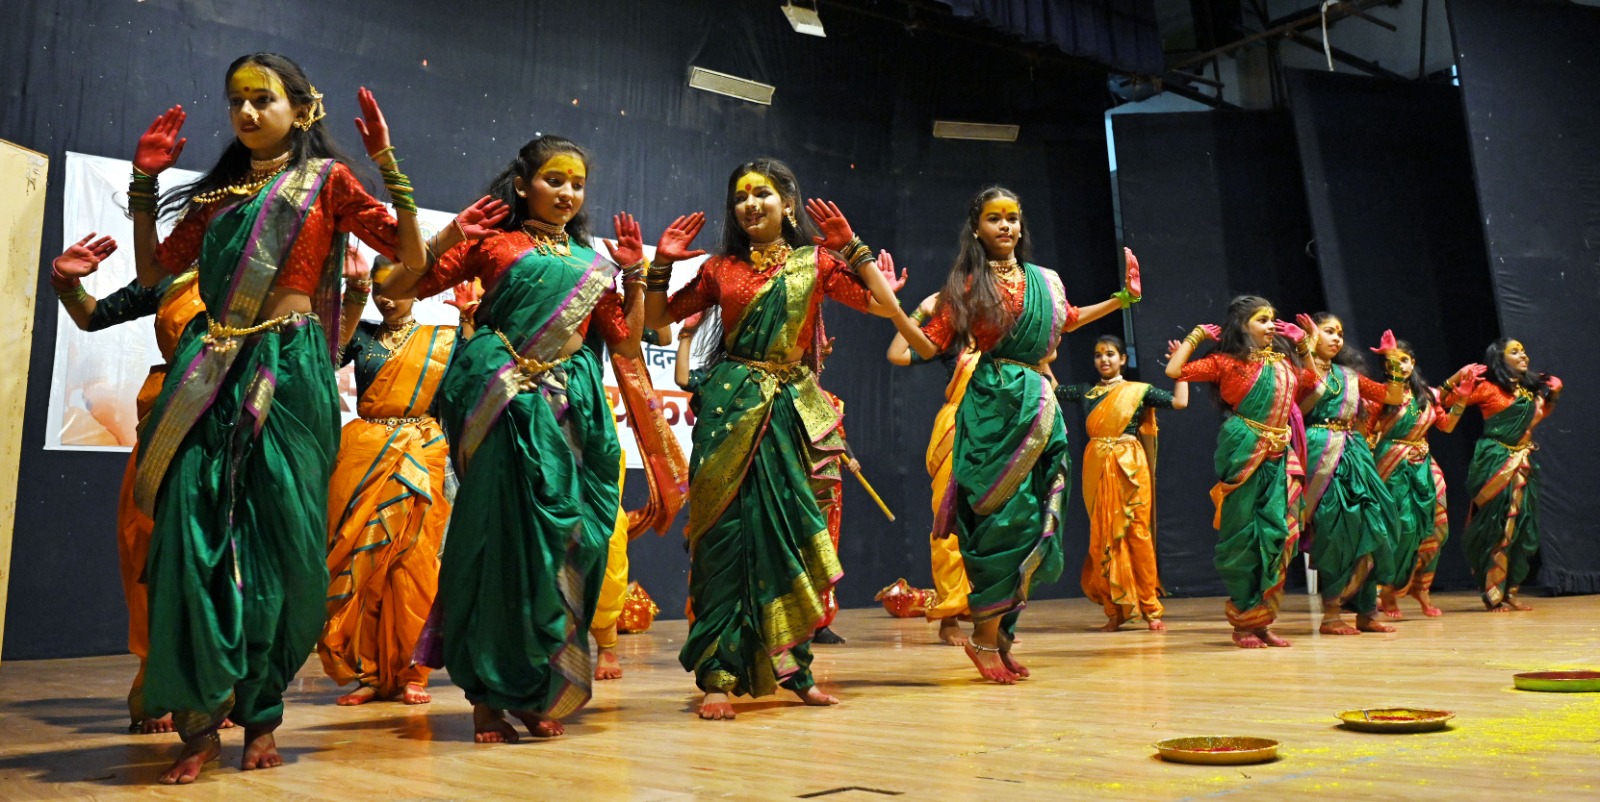 शालेय विद्यार्थ्यांनी जागवला शौर्याचा इतिहास; महाराष्ट्र दिनानिमित्त सांस्कृतिक कार्यक्रमात सादरीकरण